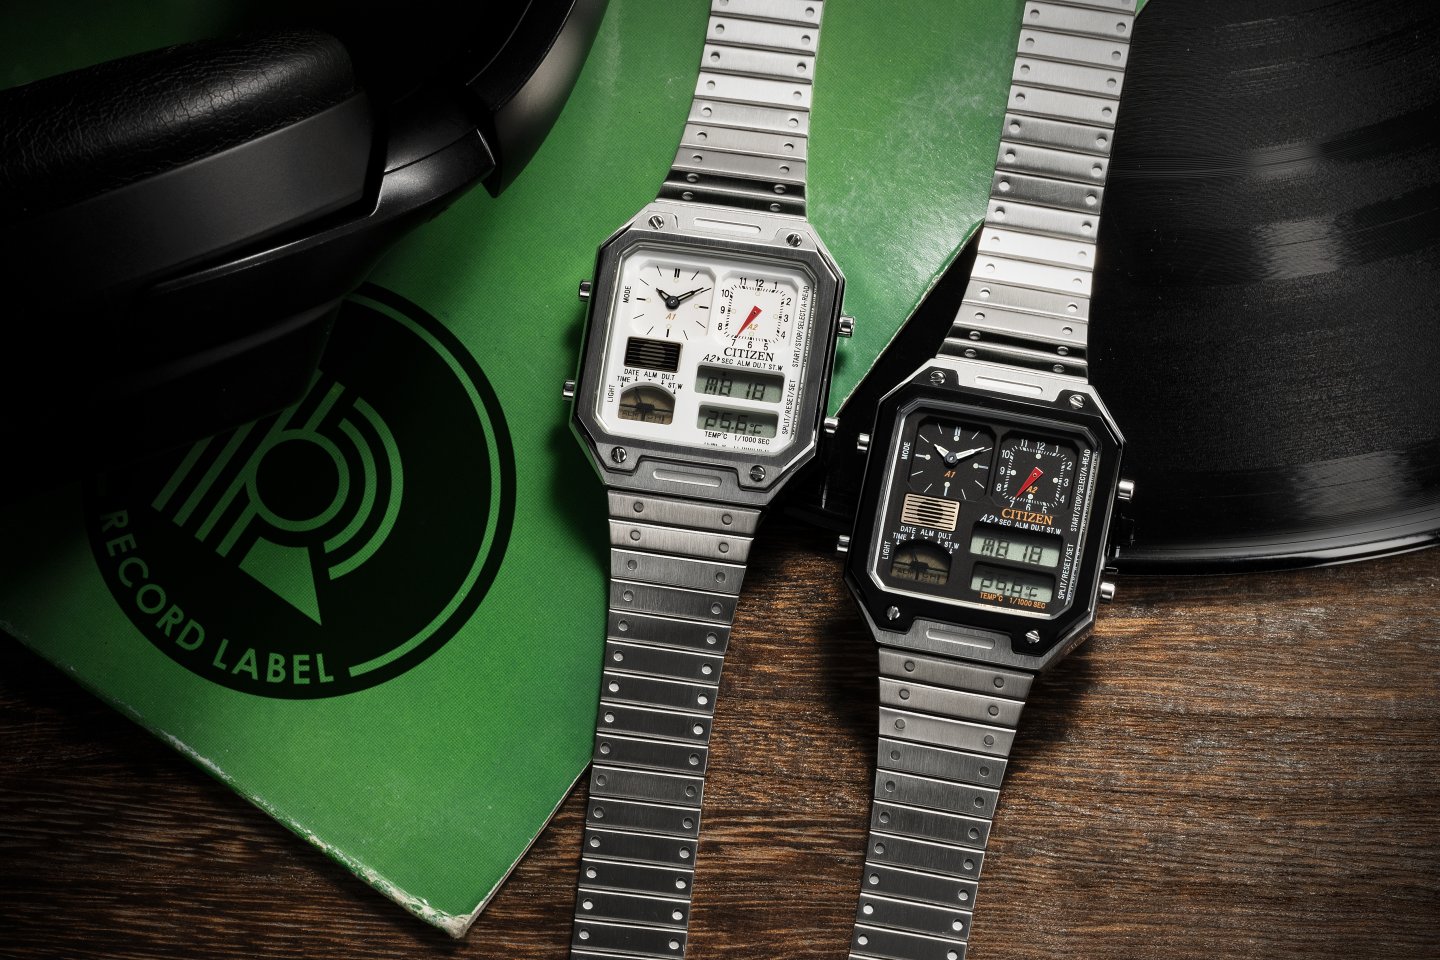 シチズンが世界初の温度センサー搭載腕時計「サーモセンサー」を復刻～スタンダート 2 モデルに加えコラボモデルも多数登場